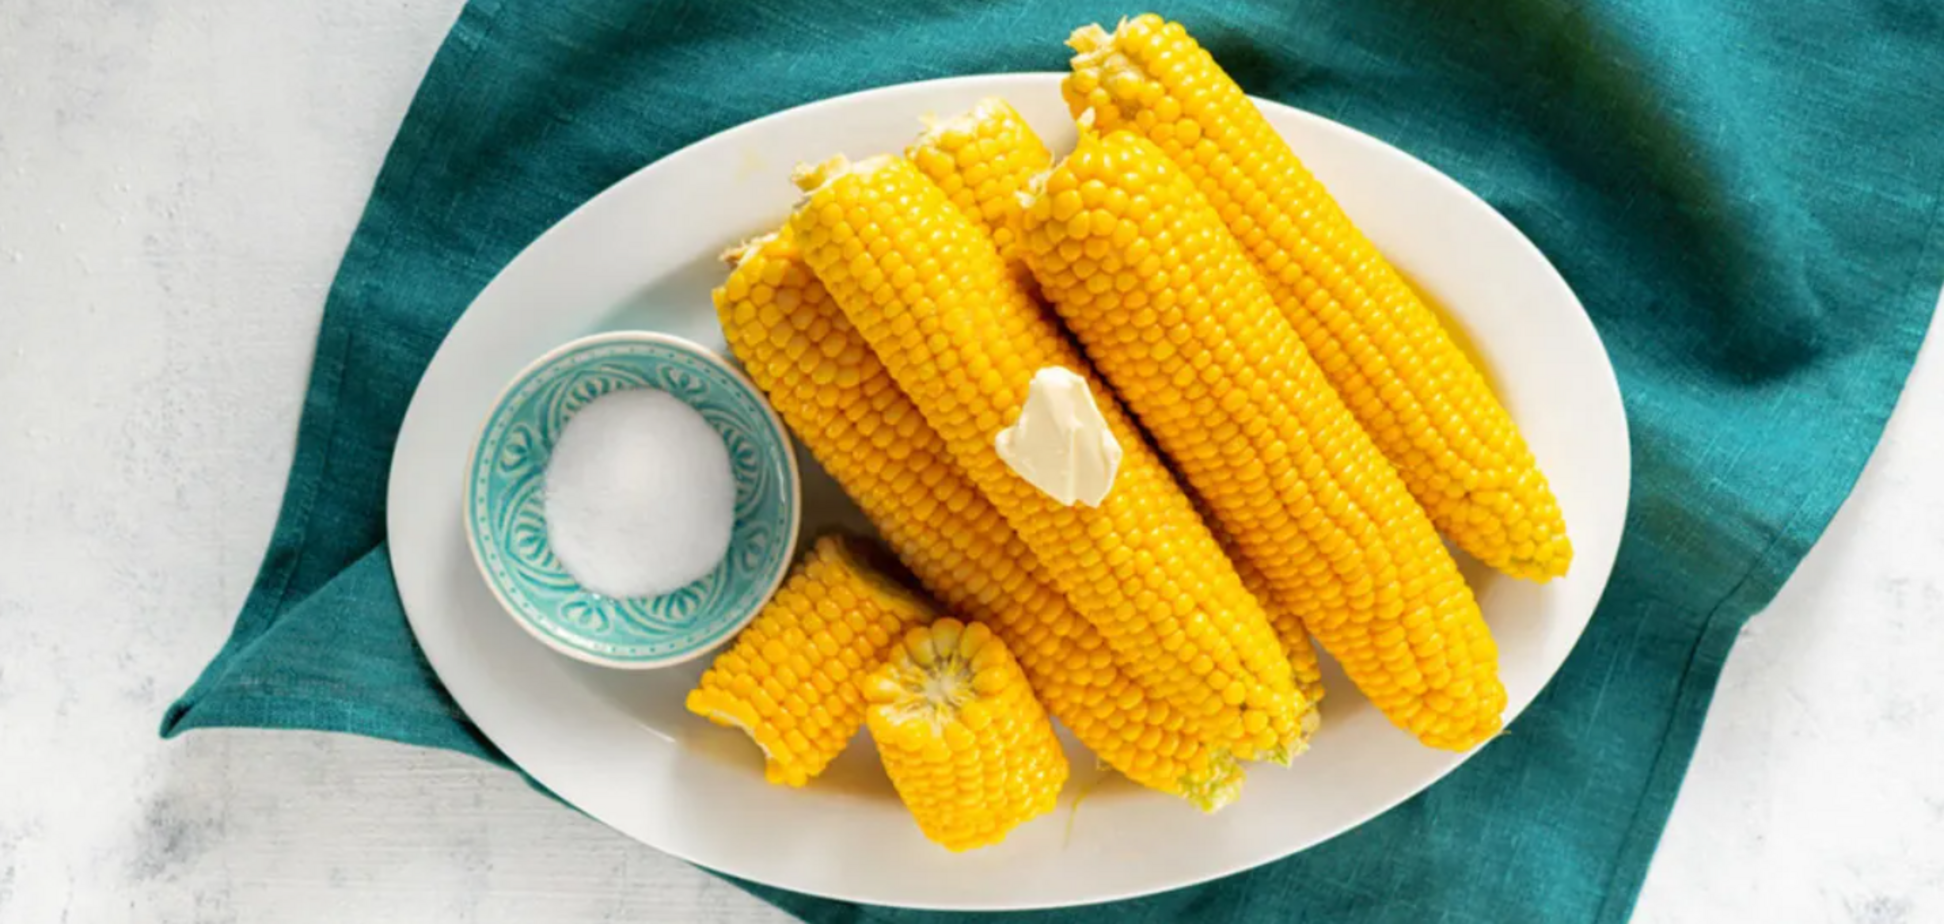 Вершкова кукурудза: як смачно та по-новому зварити овоч